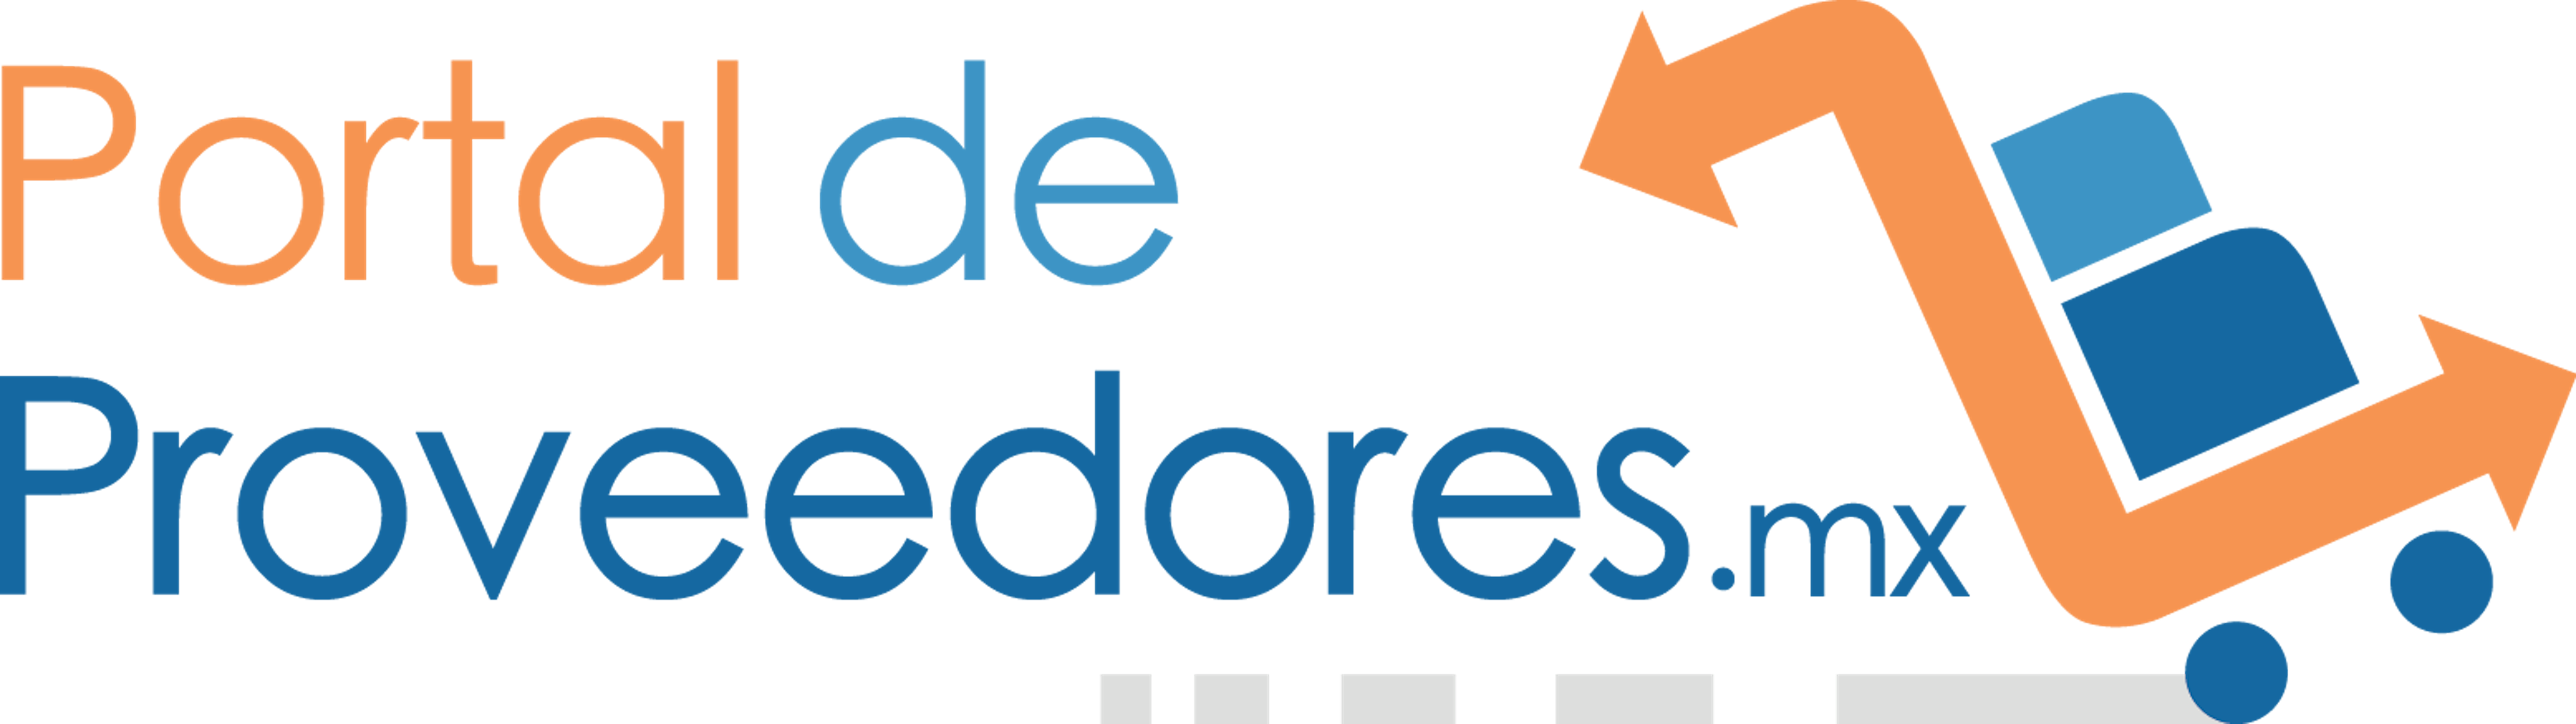 PortaldeProveedores.mx Logo